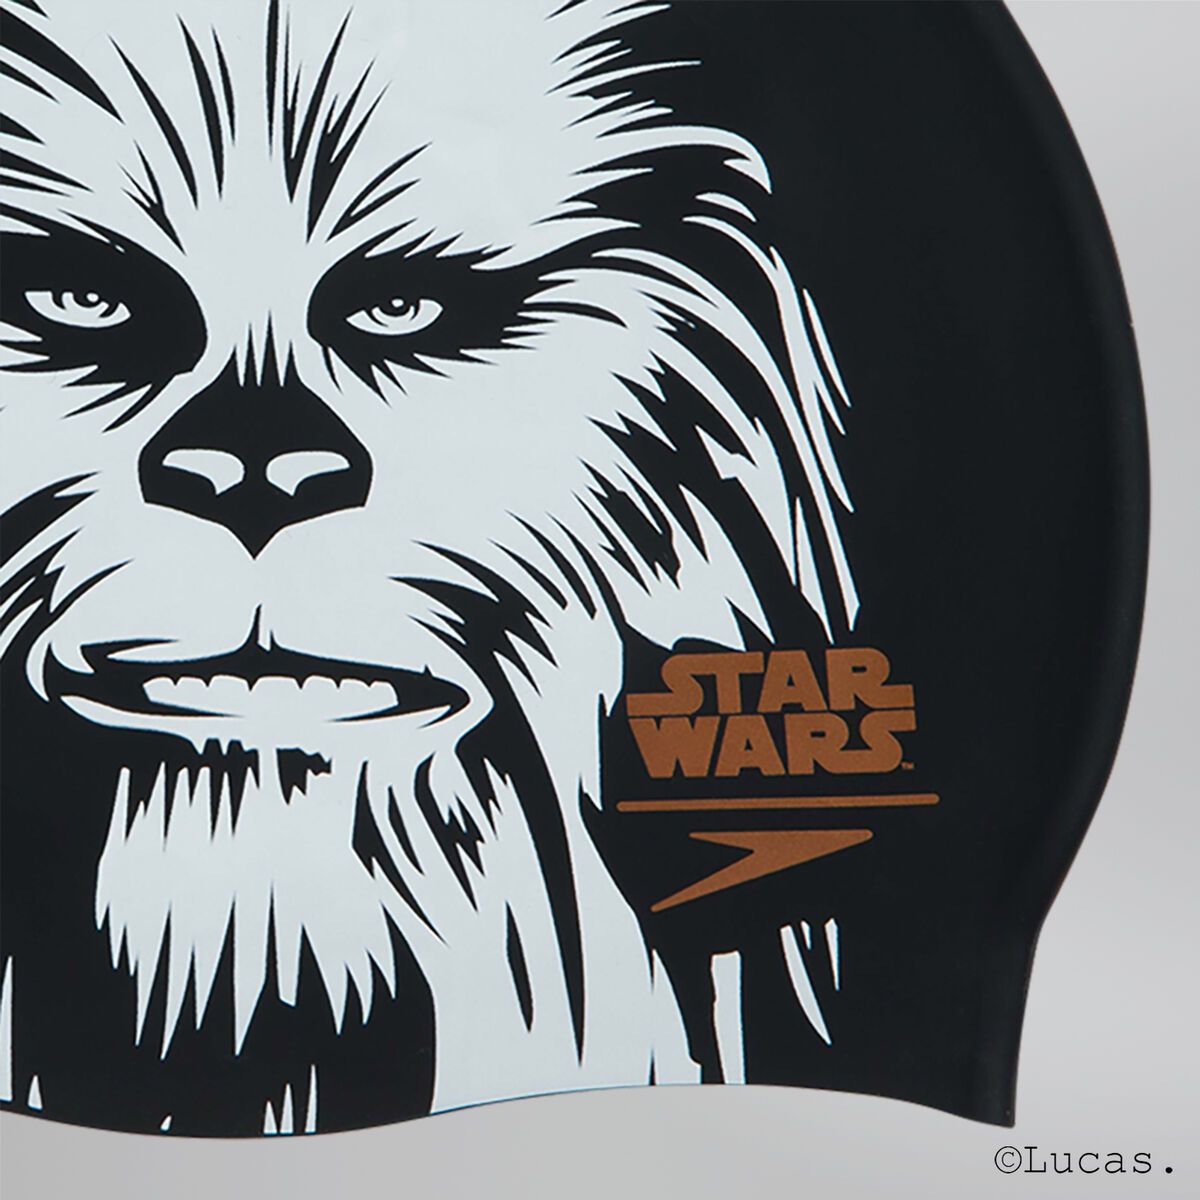 Speedo Slogan Print Cap Starwars Chewbacca